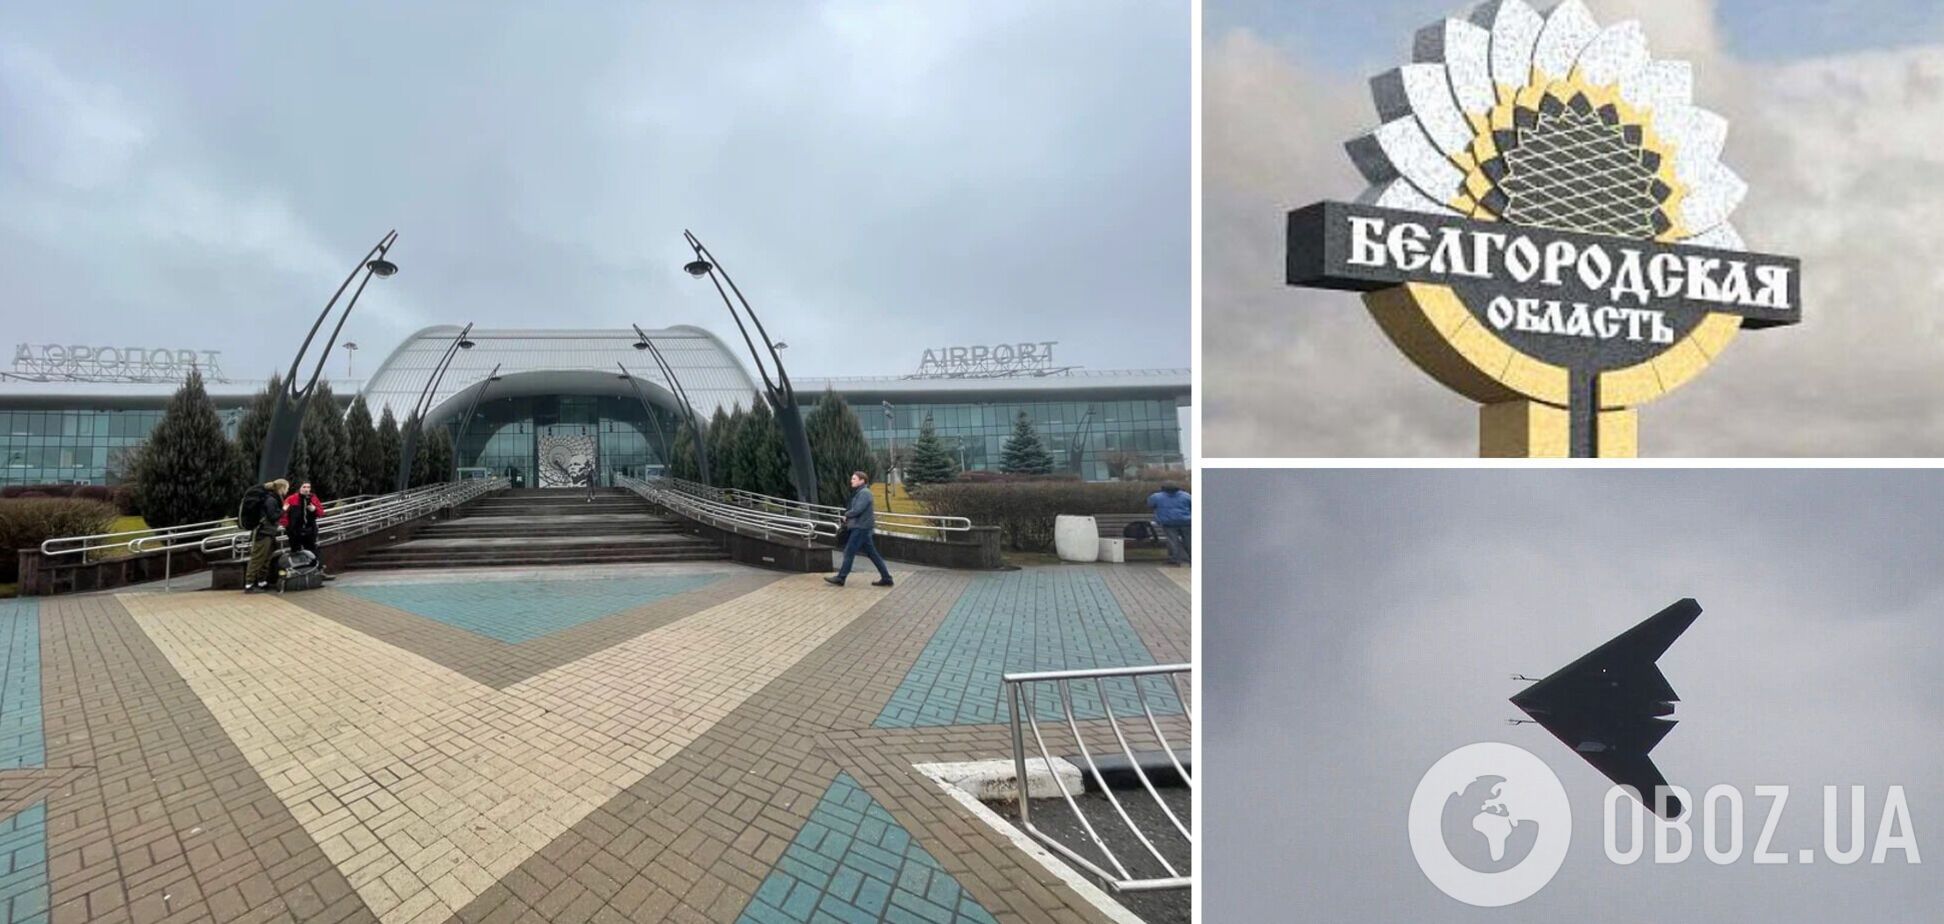 Врезался в забор и взорвался: в Белгороде заявили об атаке БПЛА на аэропорт